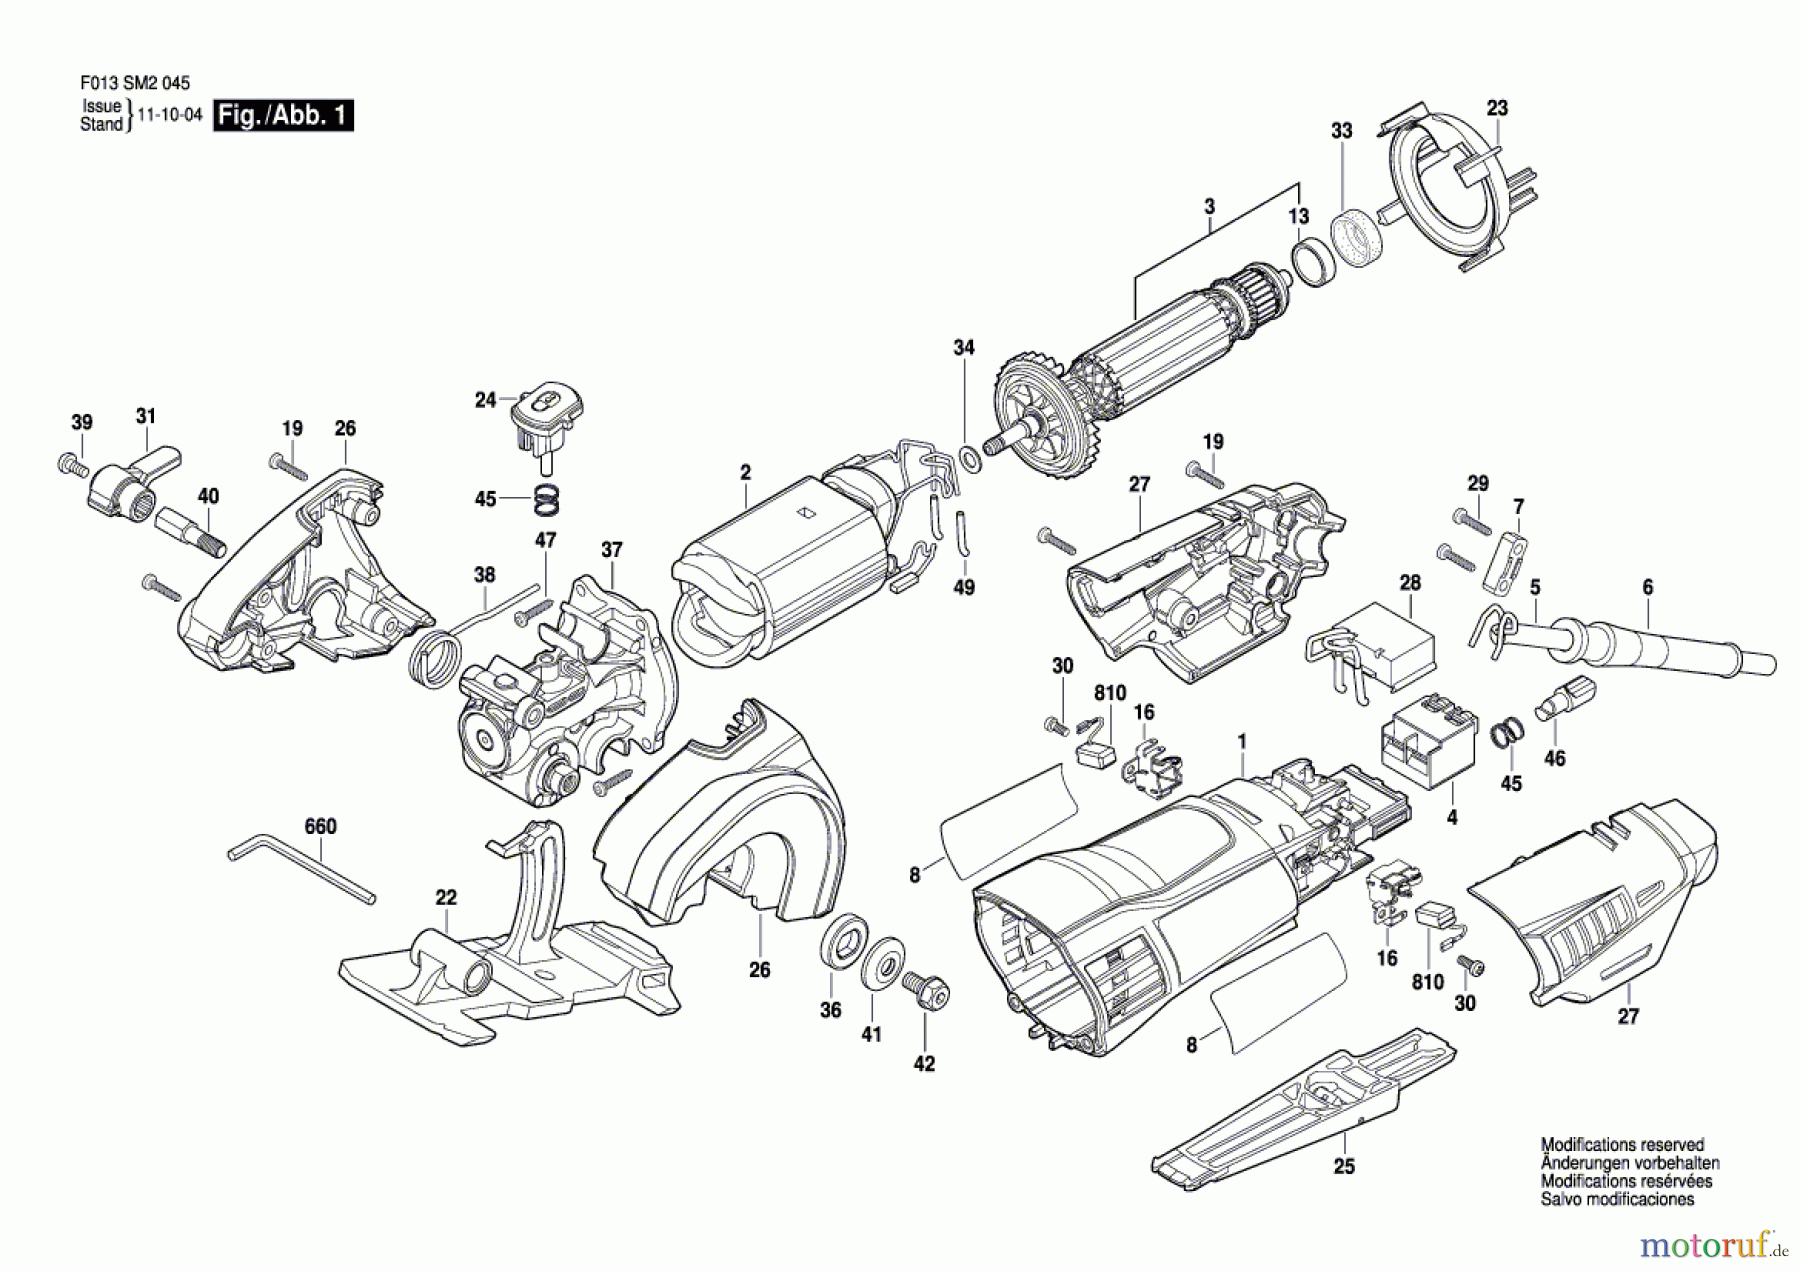  Bosch Werkzeug Multifunktionswerkzeug DSM20 Seite 1